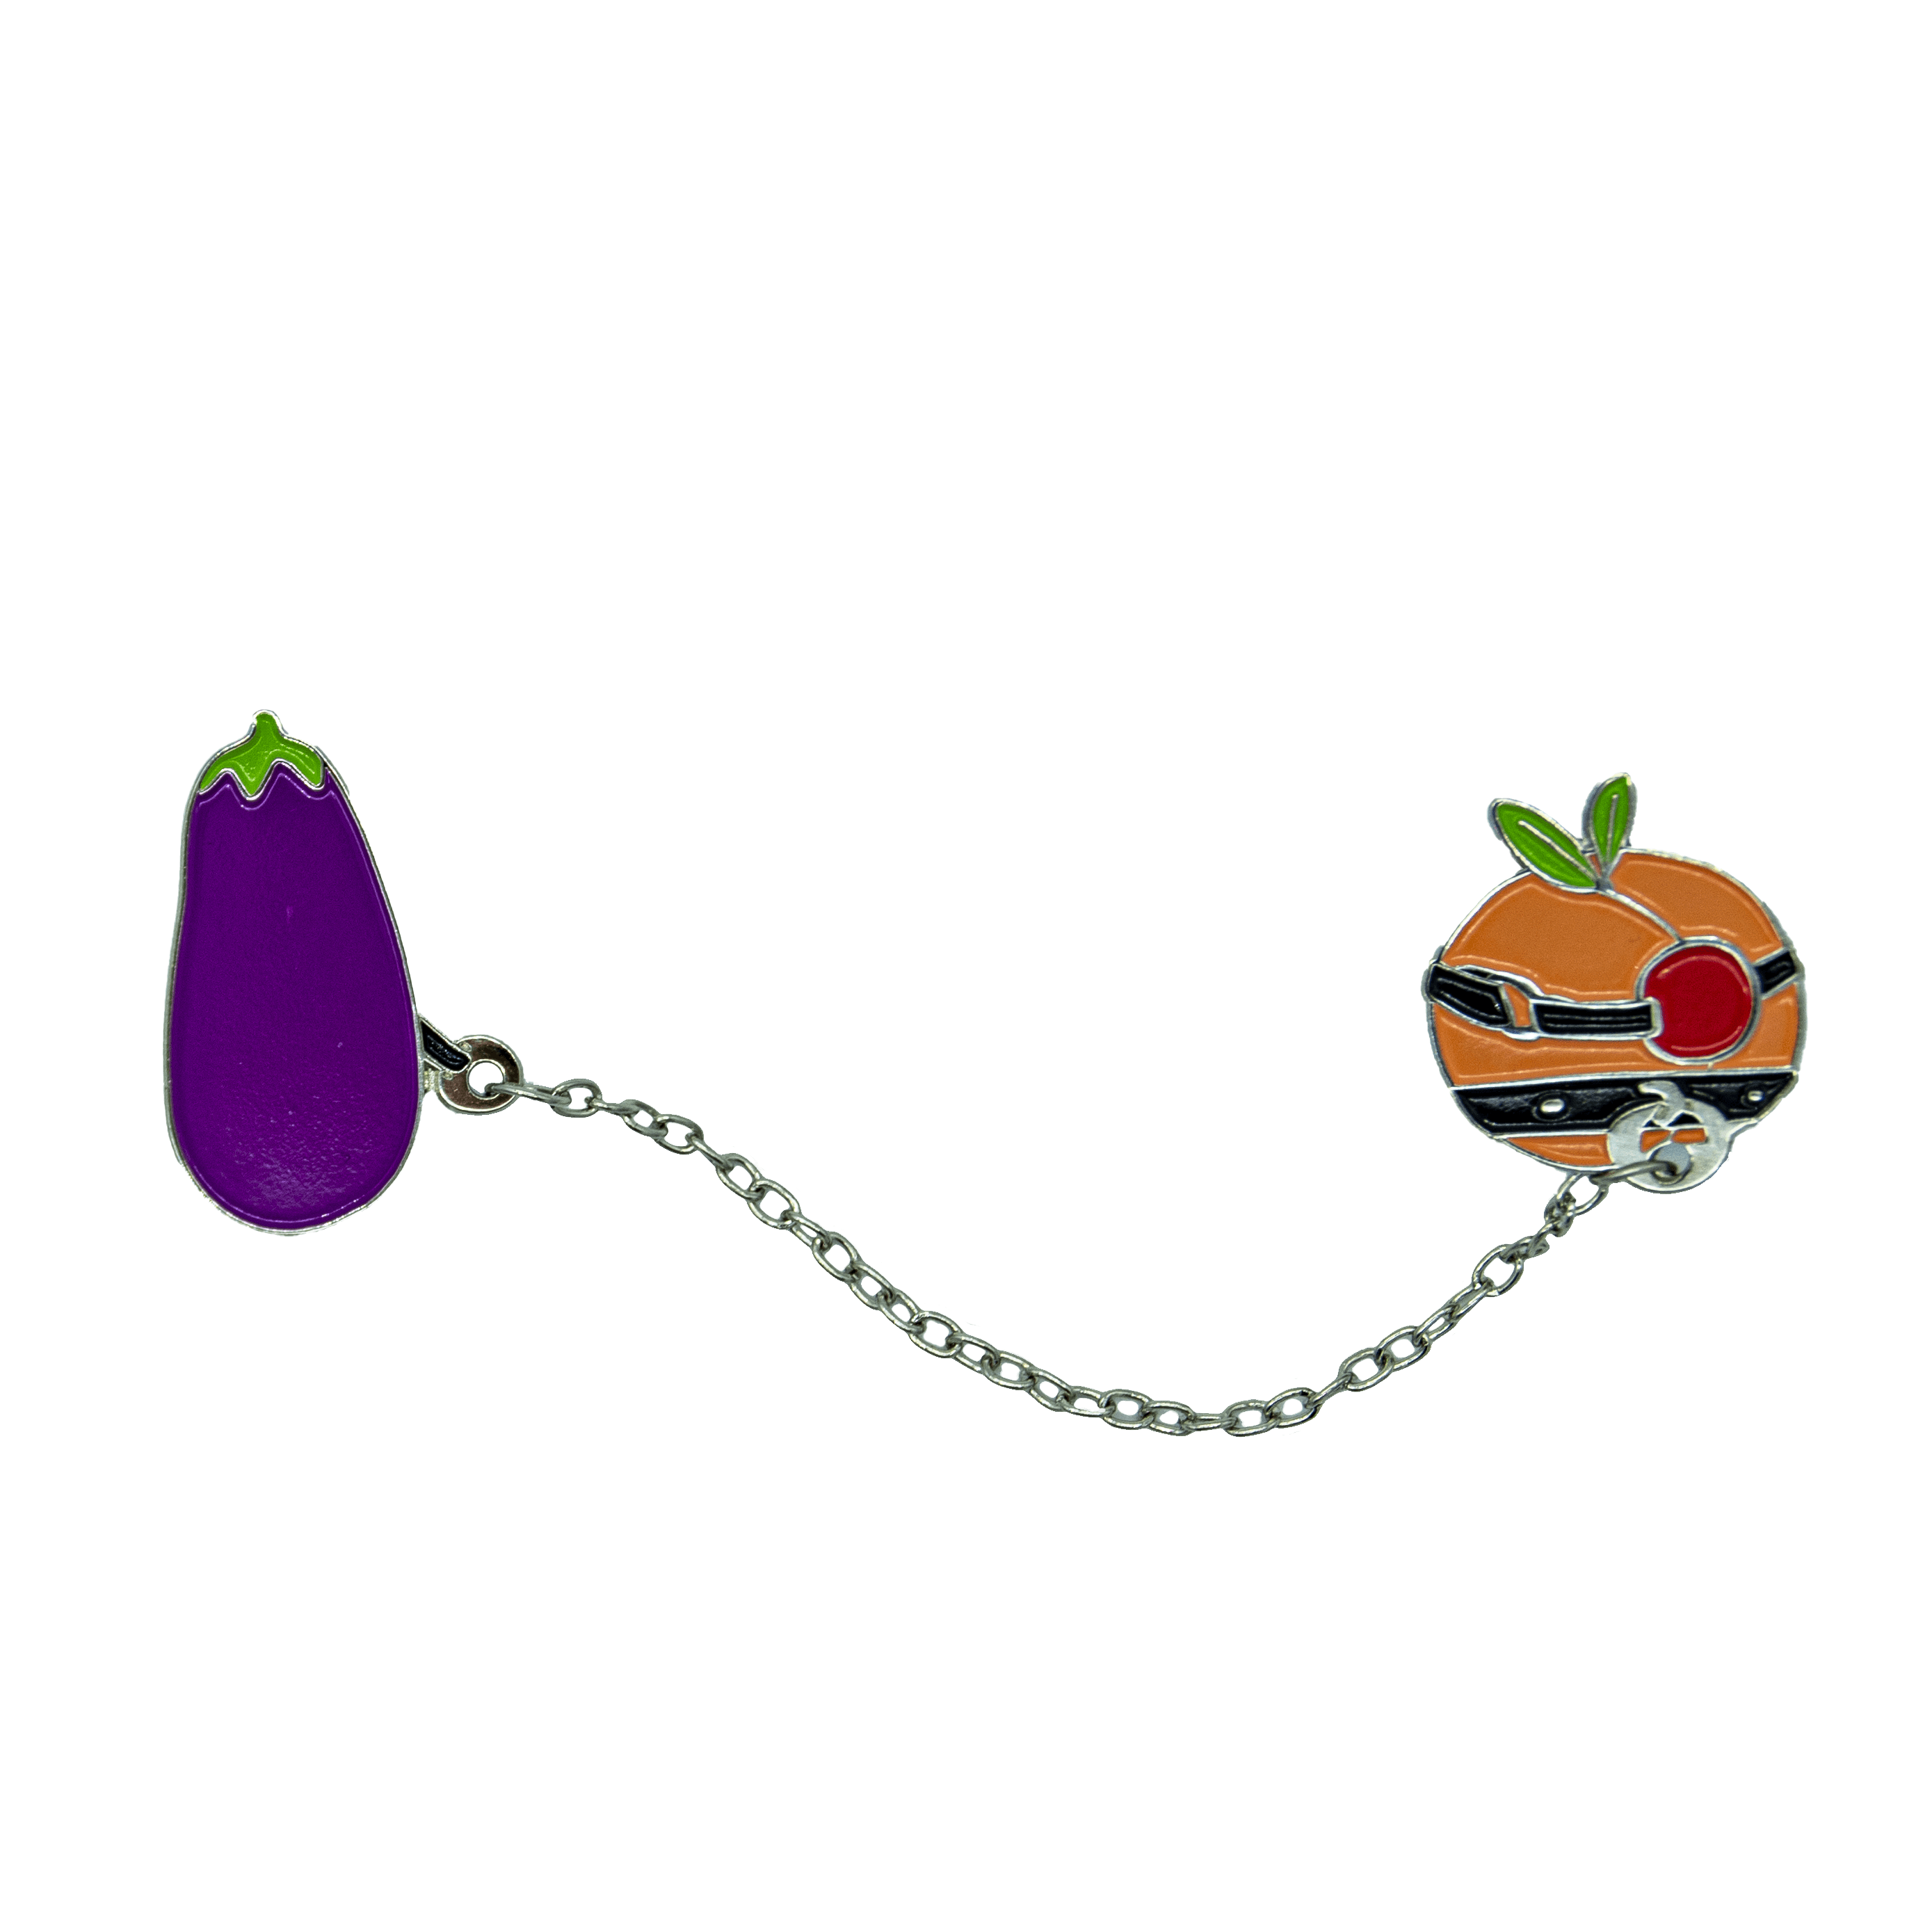 Forbidden Fruit Enamel Pin Set